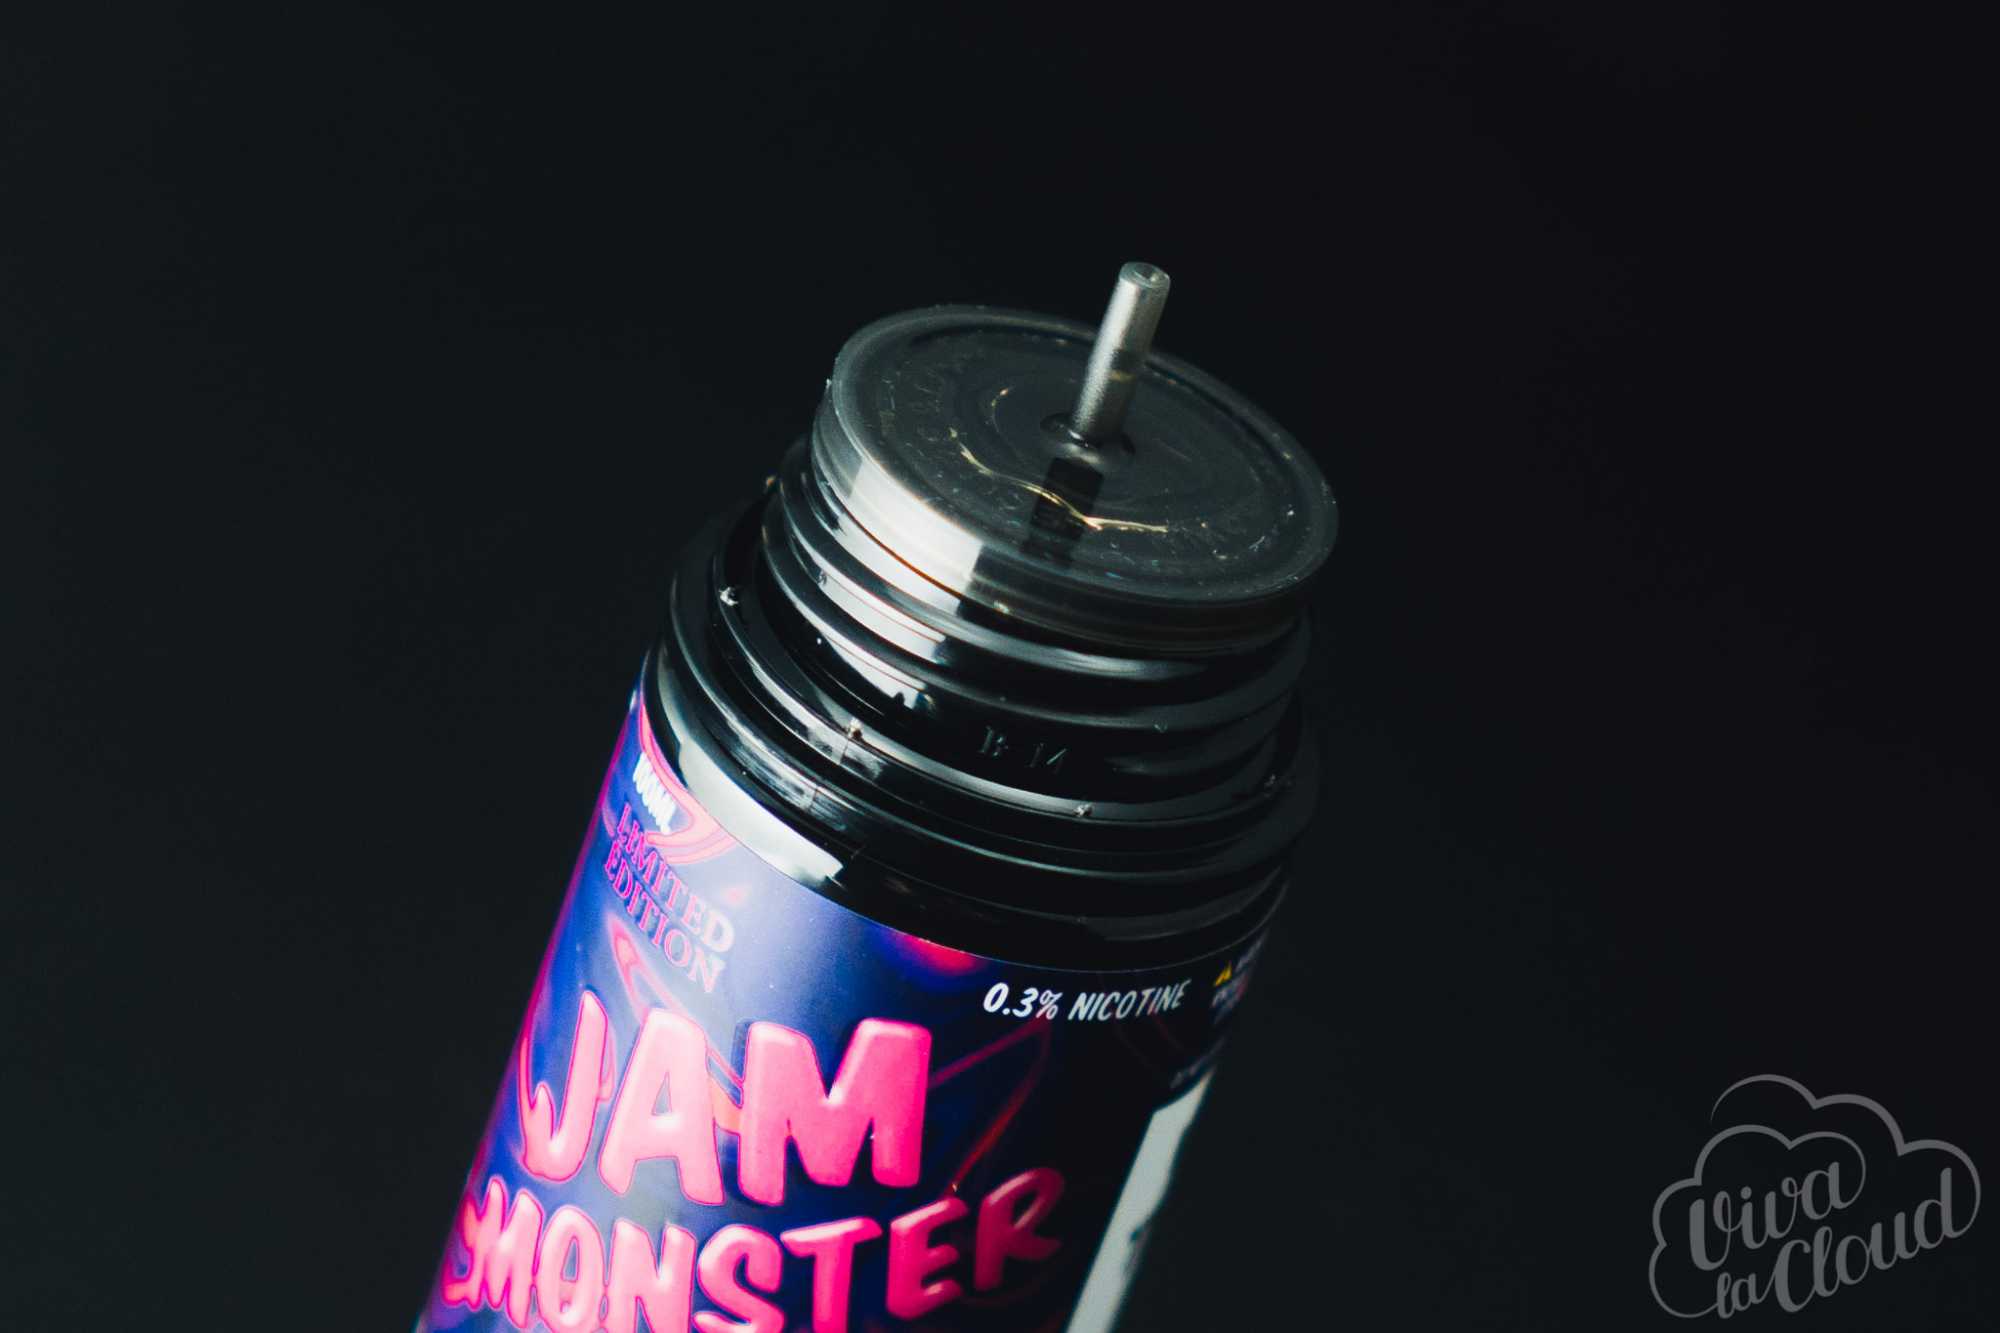 jam monster